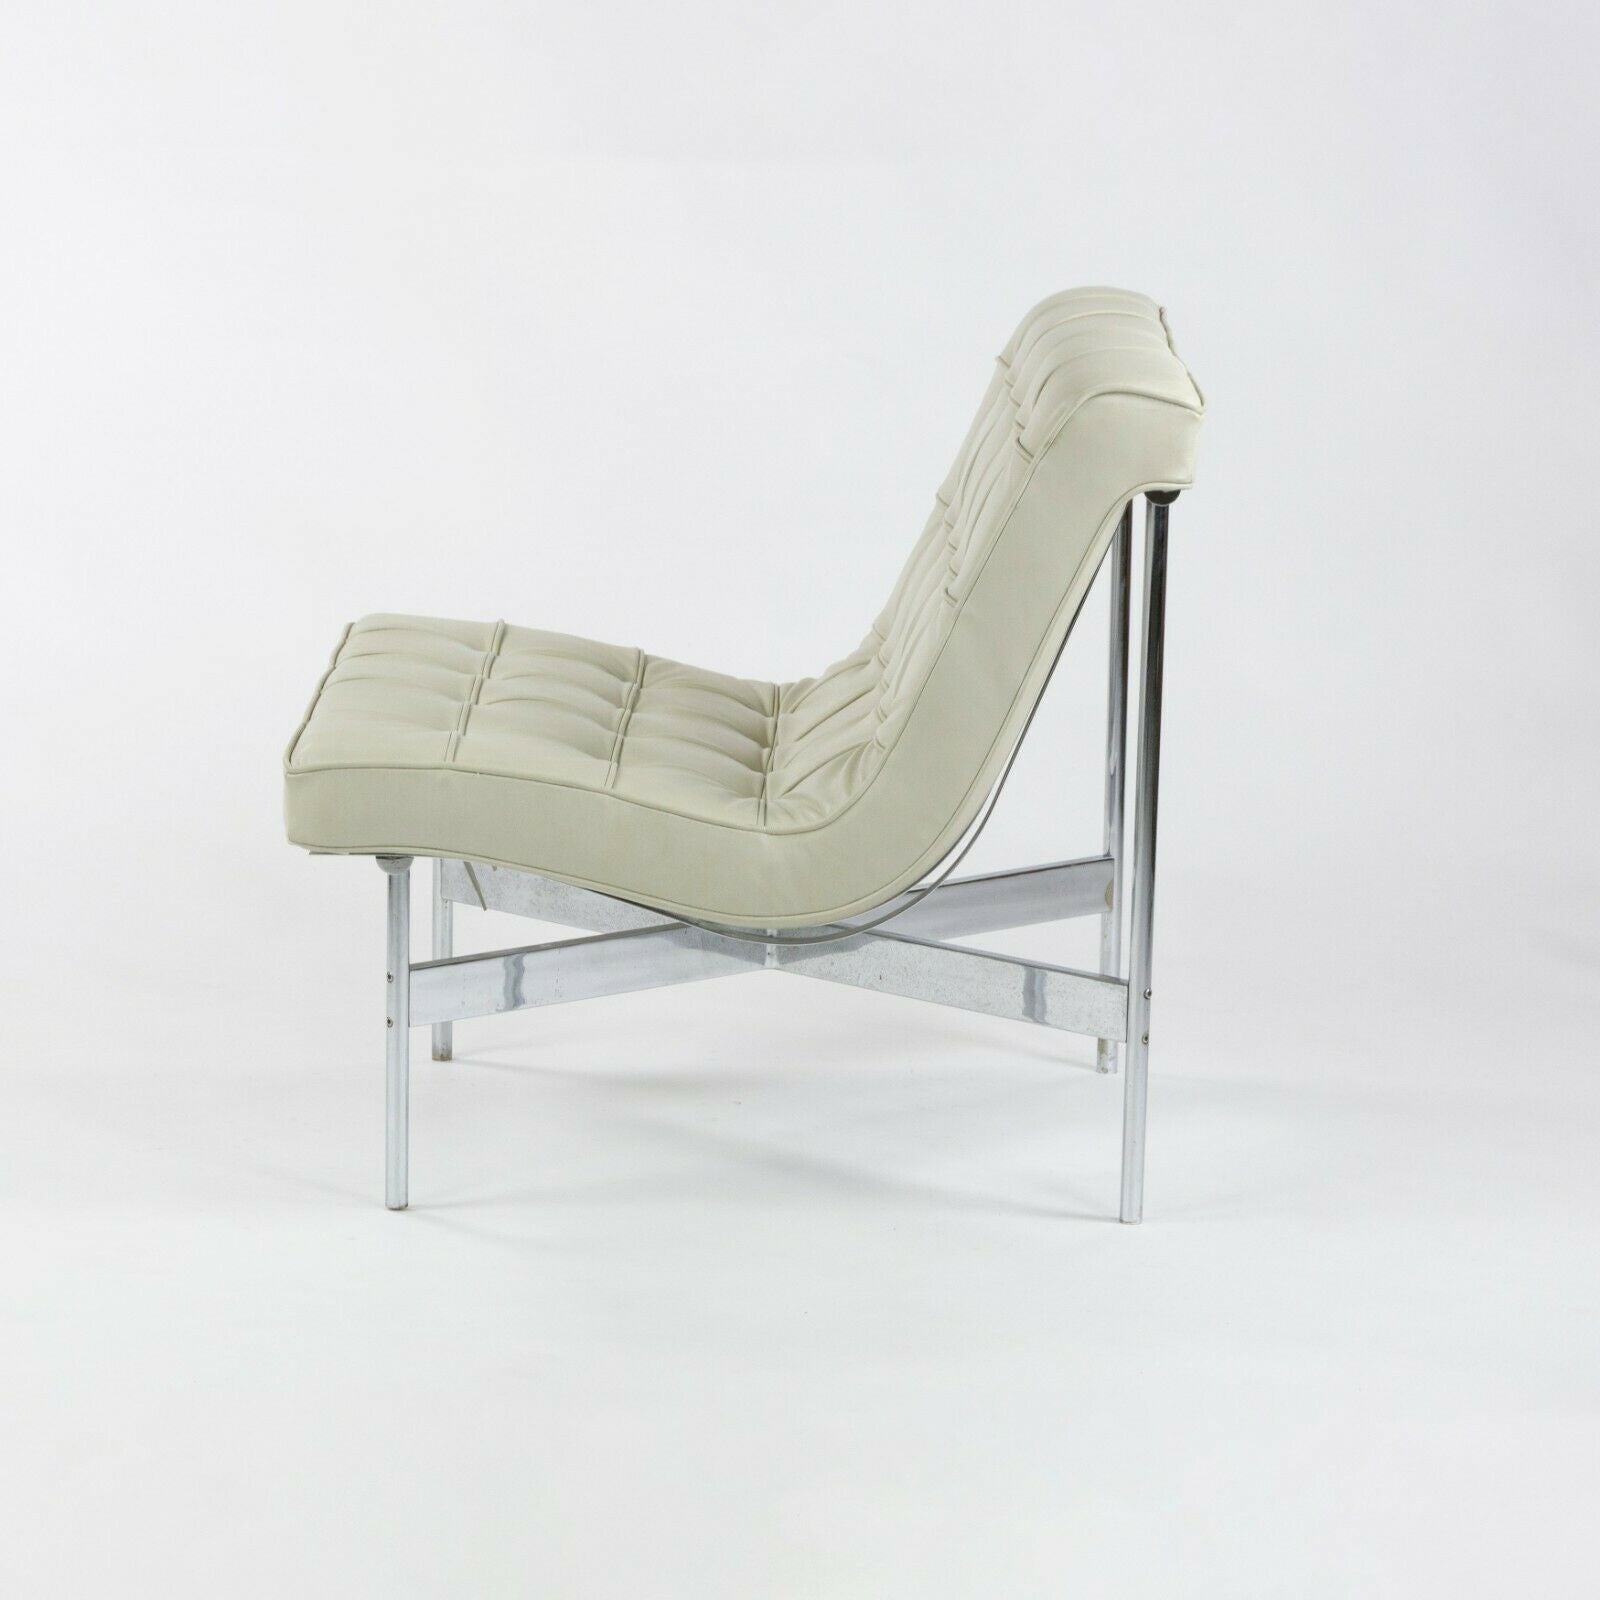 1950s Original Pair Lounge Chairs 5-LC Lounge Chairs Katavolos Estelle Laverne